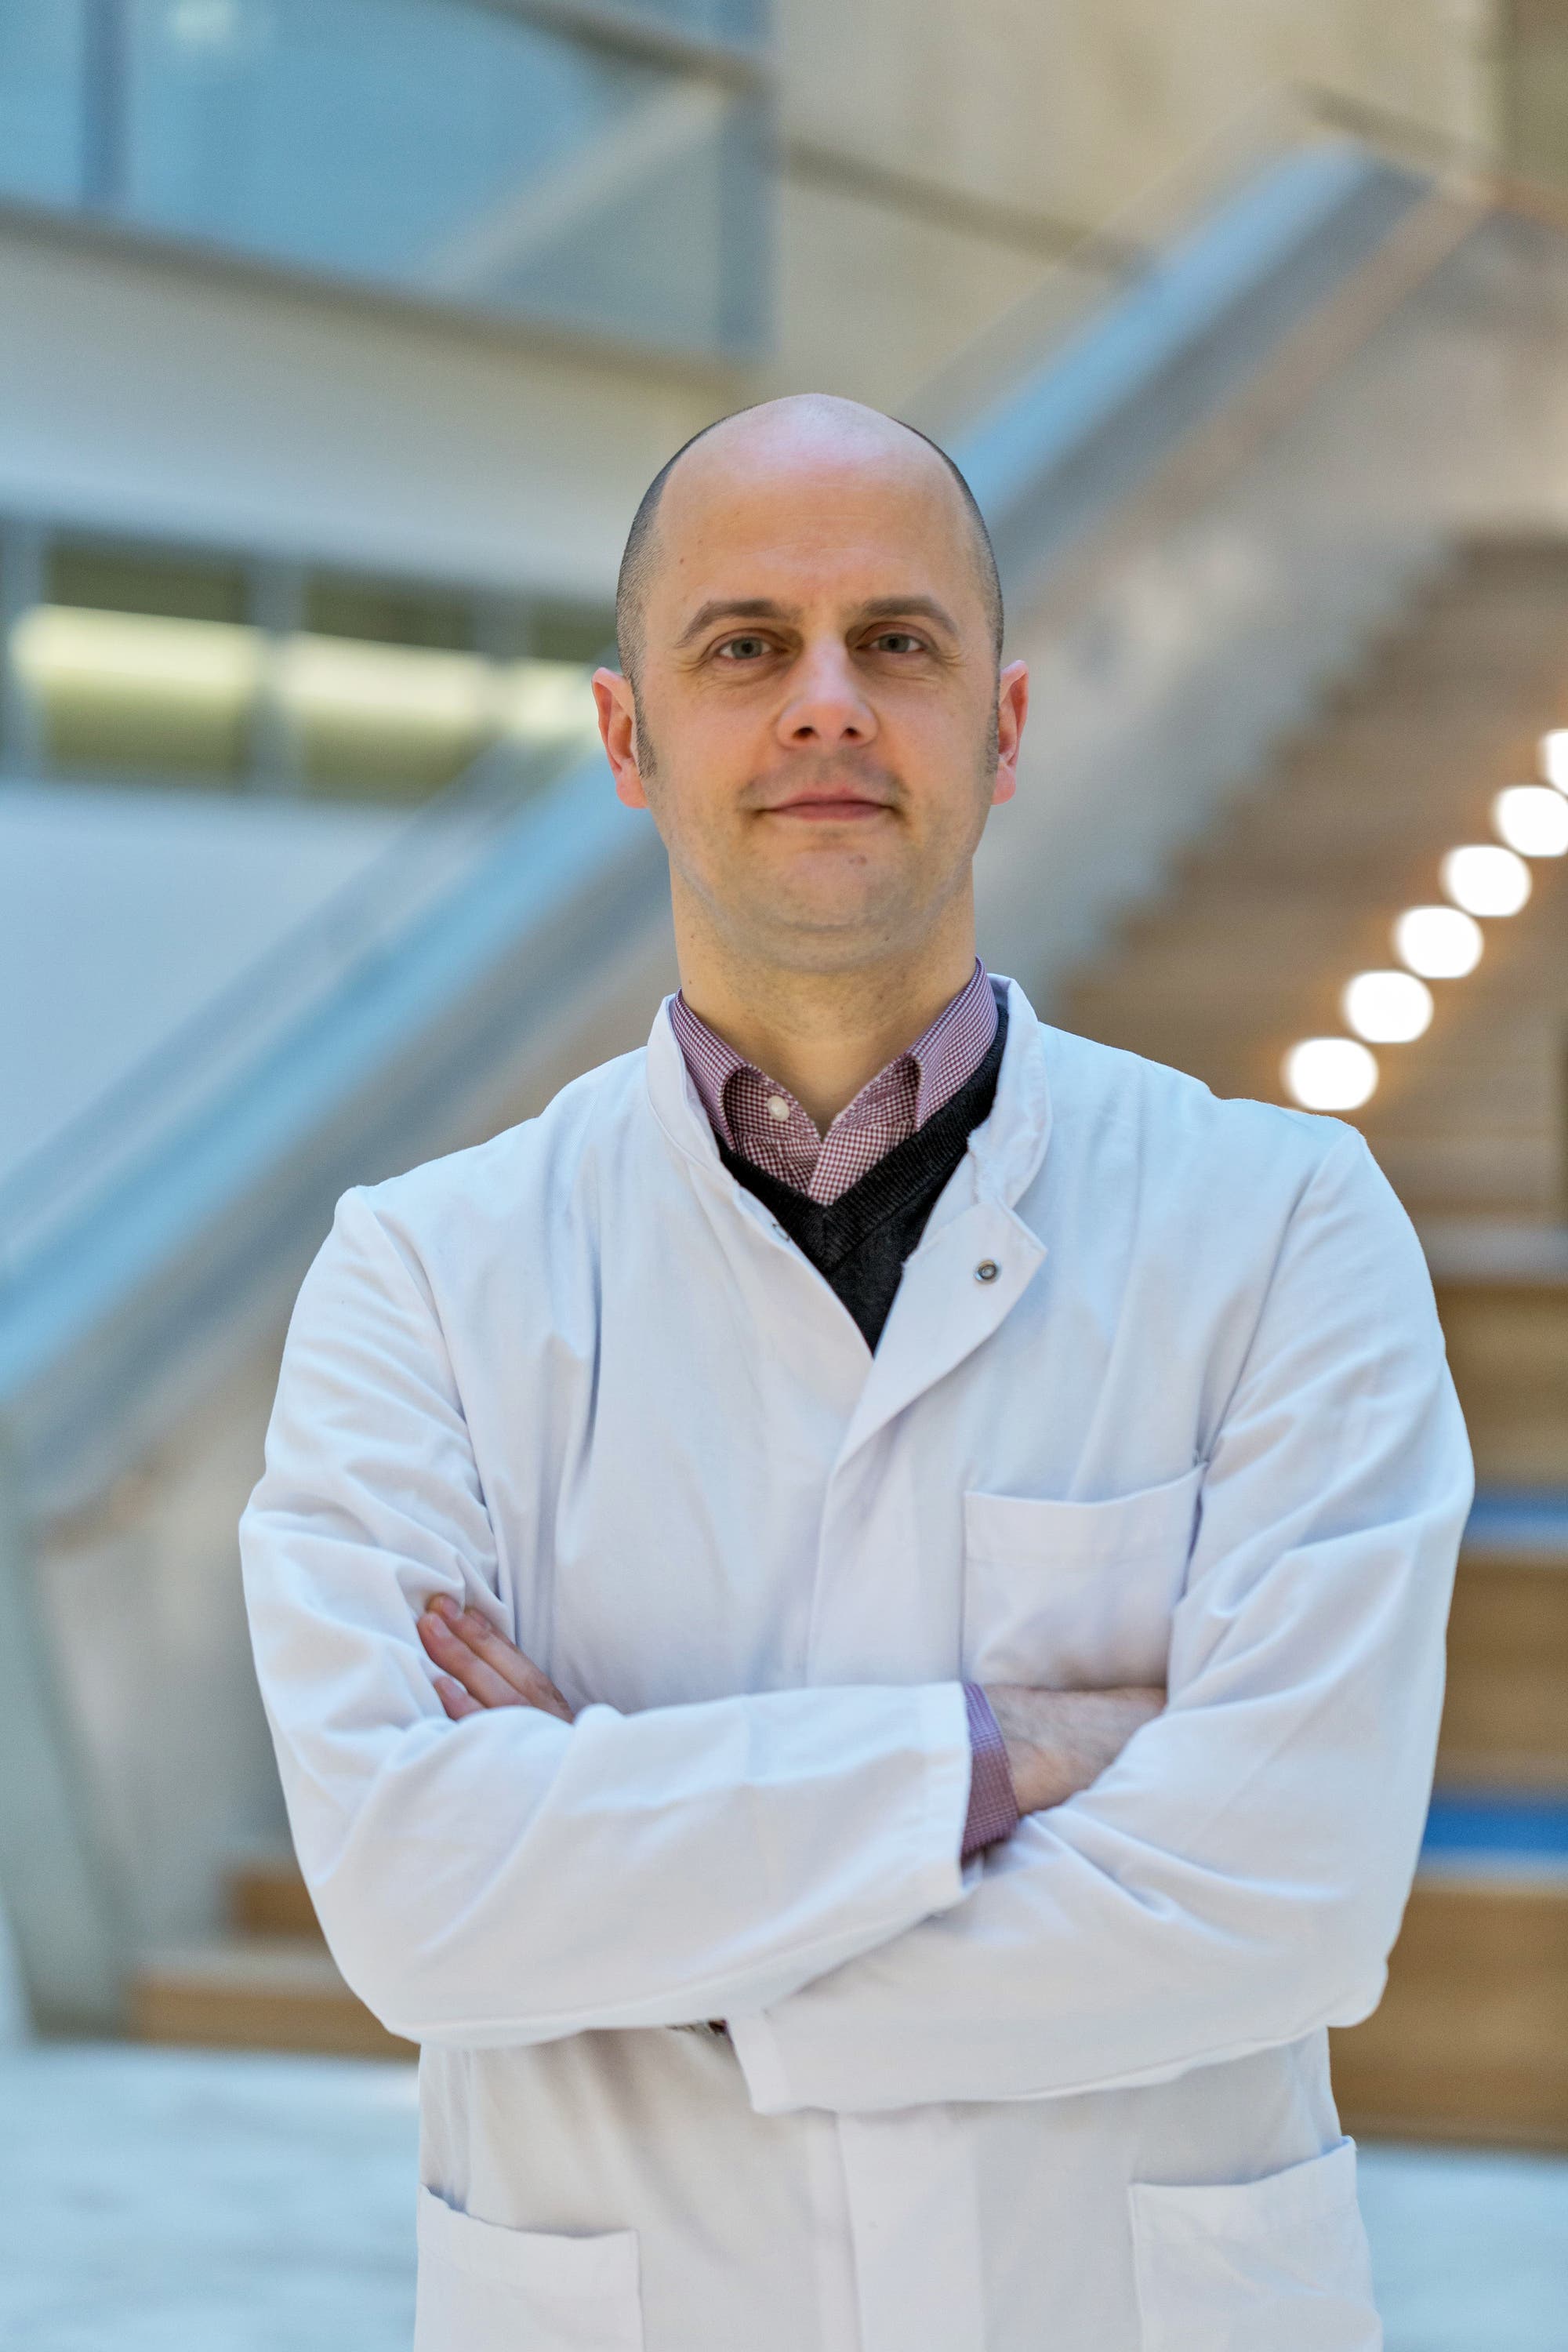 Henrik Oster ist Professor für Chronophysiologie und leitet das Institut für Neurobiologie der Universität zu Lübeck.